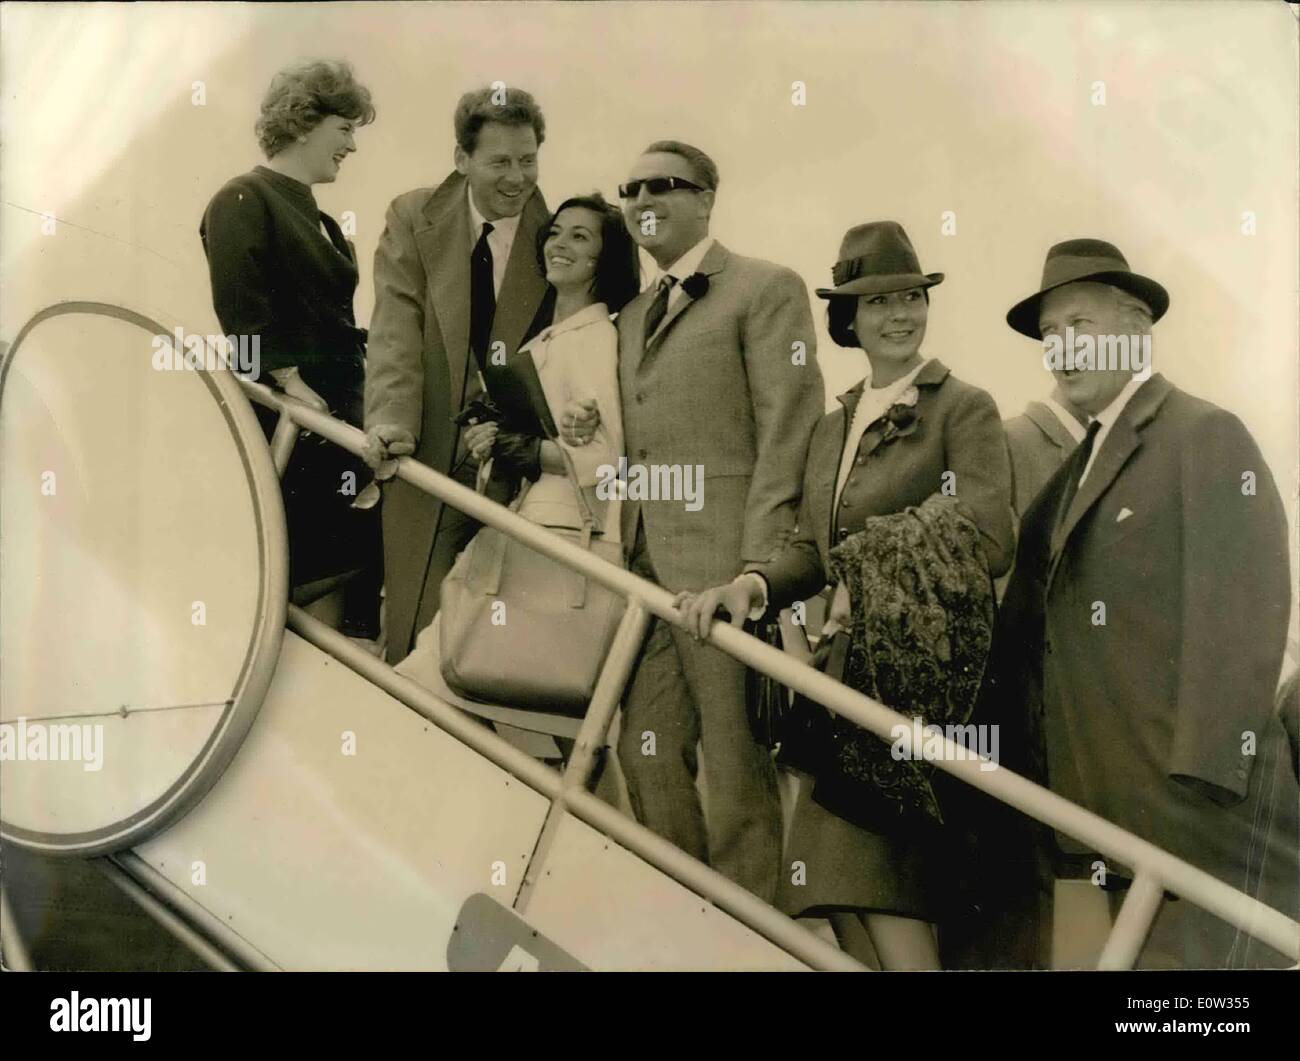 März 03, 1961 - Cannes Film Festival öffnet seine Türen in der Nacht: Das Cannes International Film Festival eröffnen offiziell seine Tür heute Abend mit der Präsentation der amerikanischen Film von Otto Preminger' 'Exodus'' und ''Soi eede Gala'', mehr als so Persönlichkeiten, Stars, Schauspieler und Schauspielerinnen werden erwartet. Foto zeigt verlassen zu Tag Flughafen Orly für Cannes sind von links nach rechts, dem französischen Schauspieler Jean Pierre Aumont, seine Frau, Marisa Pavan. Links Berühmte Charles Trenet, Quark Jurgens und seine Frau Simone Bicheron. Stockfoto